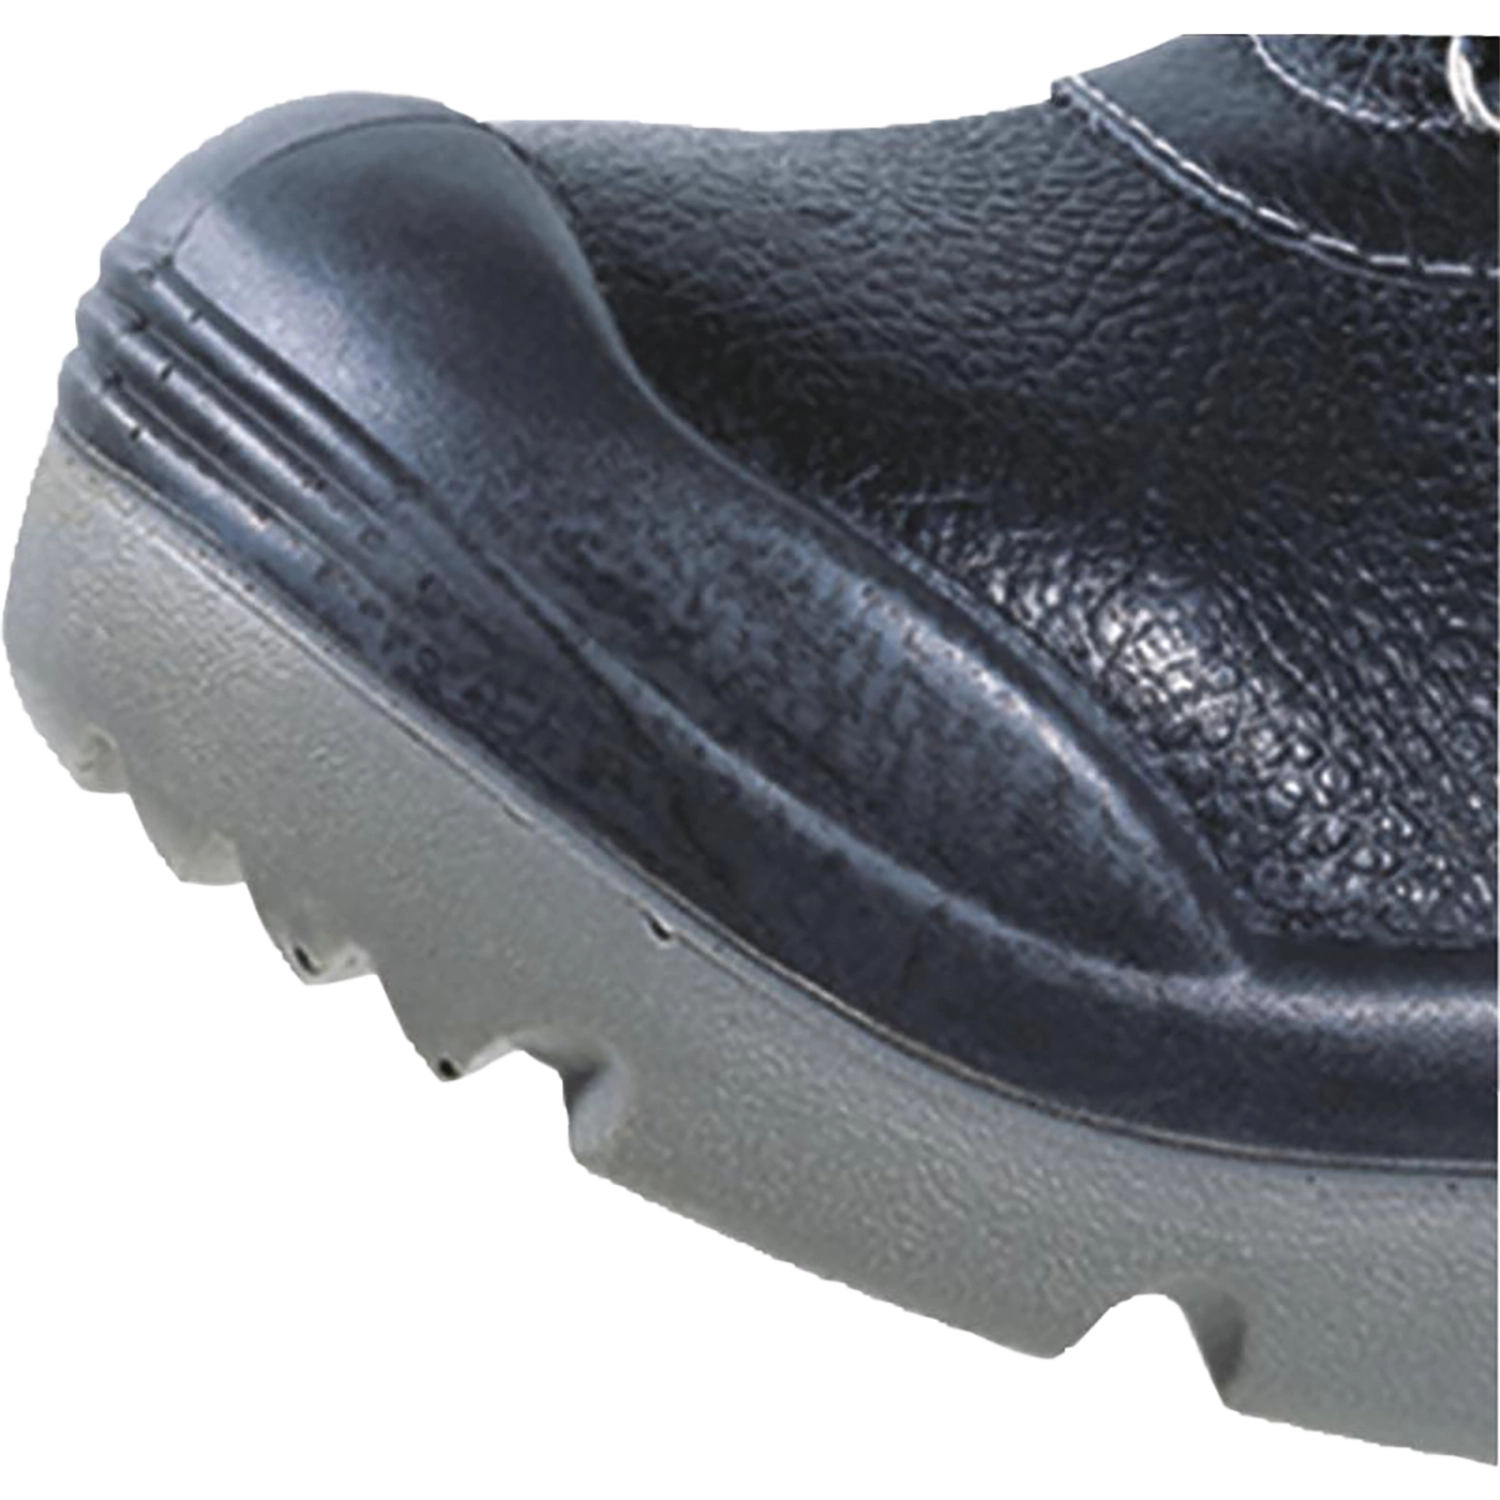 Hoog model schoenen - X-Large  - Sault S3 - zwart - maat 46